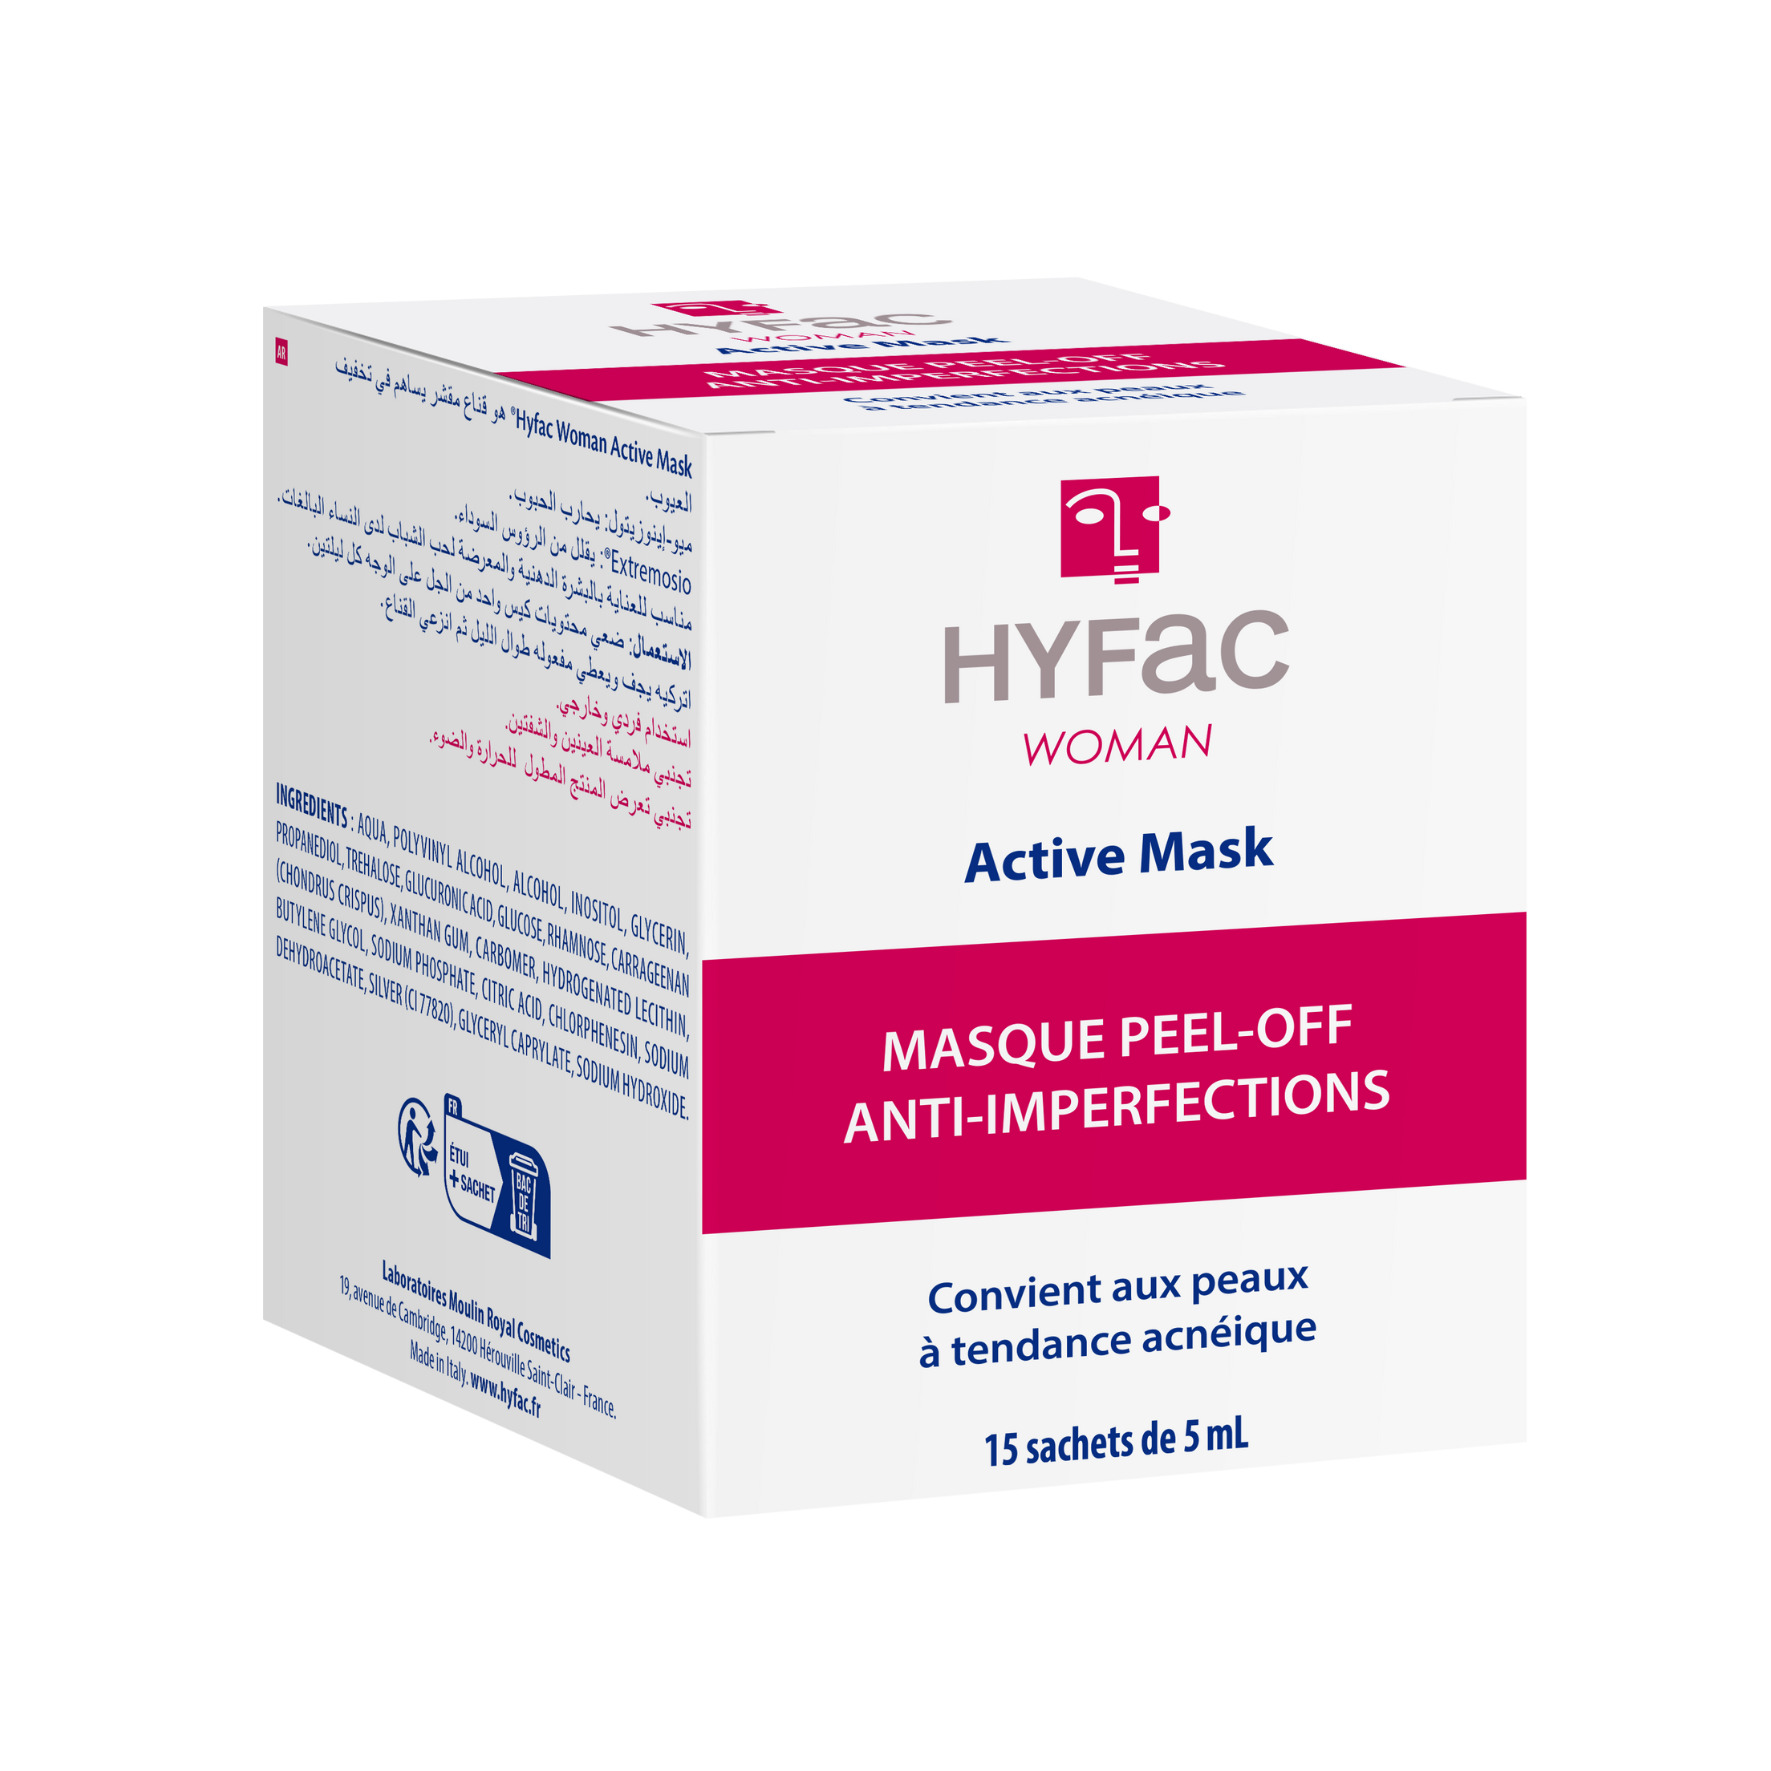 HYFAC WOMAN Active Mask tratamiento del acné para mujeres